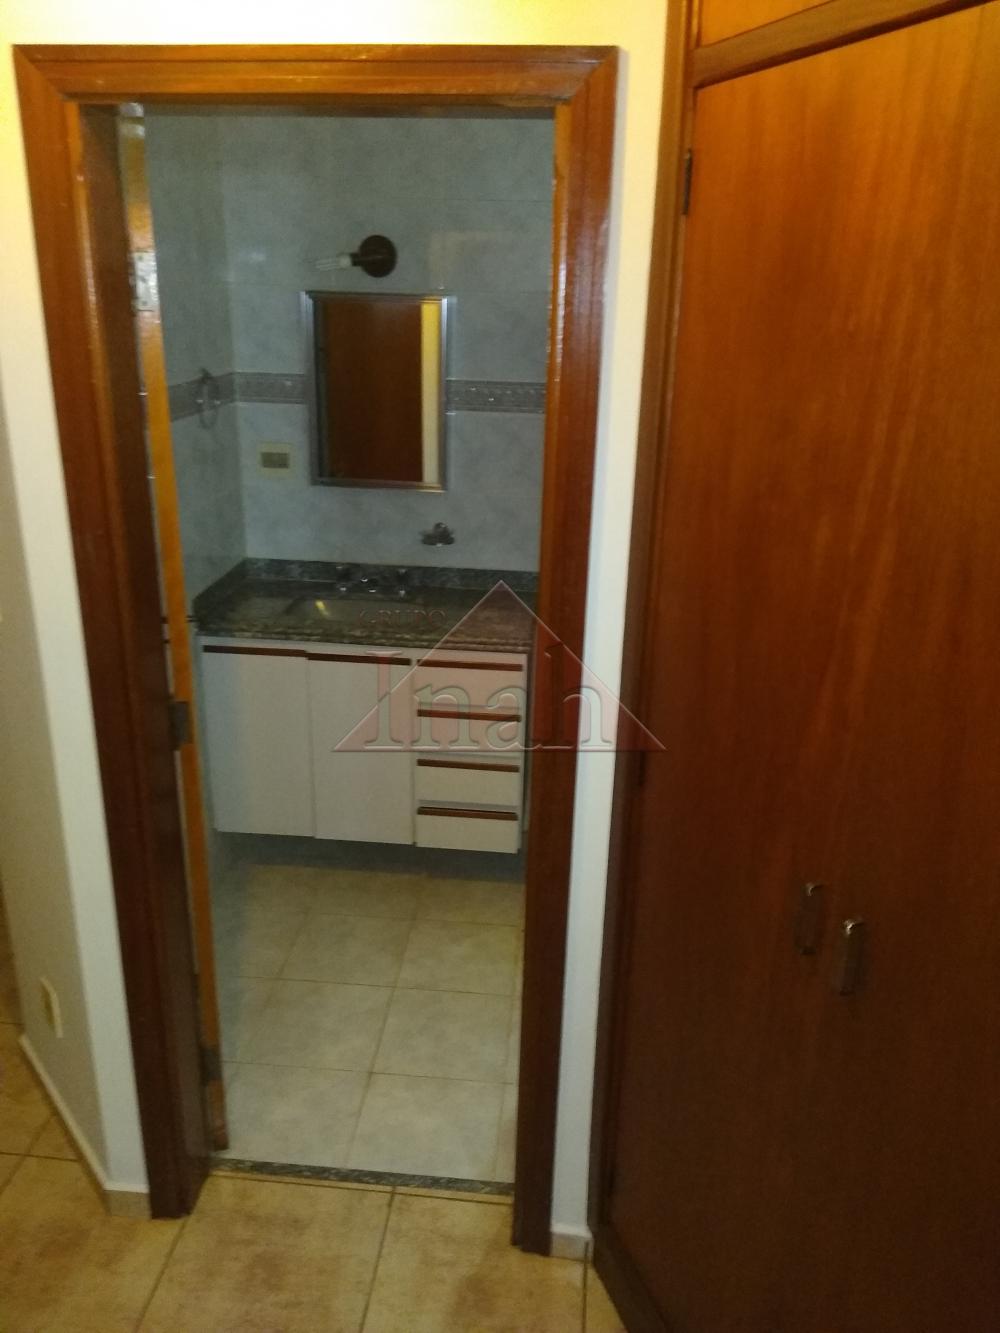 Alugar Apartamentos / Apartamento em Ribeirão Preto R$ 800,00 - Foto 9